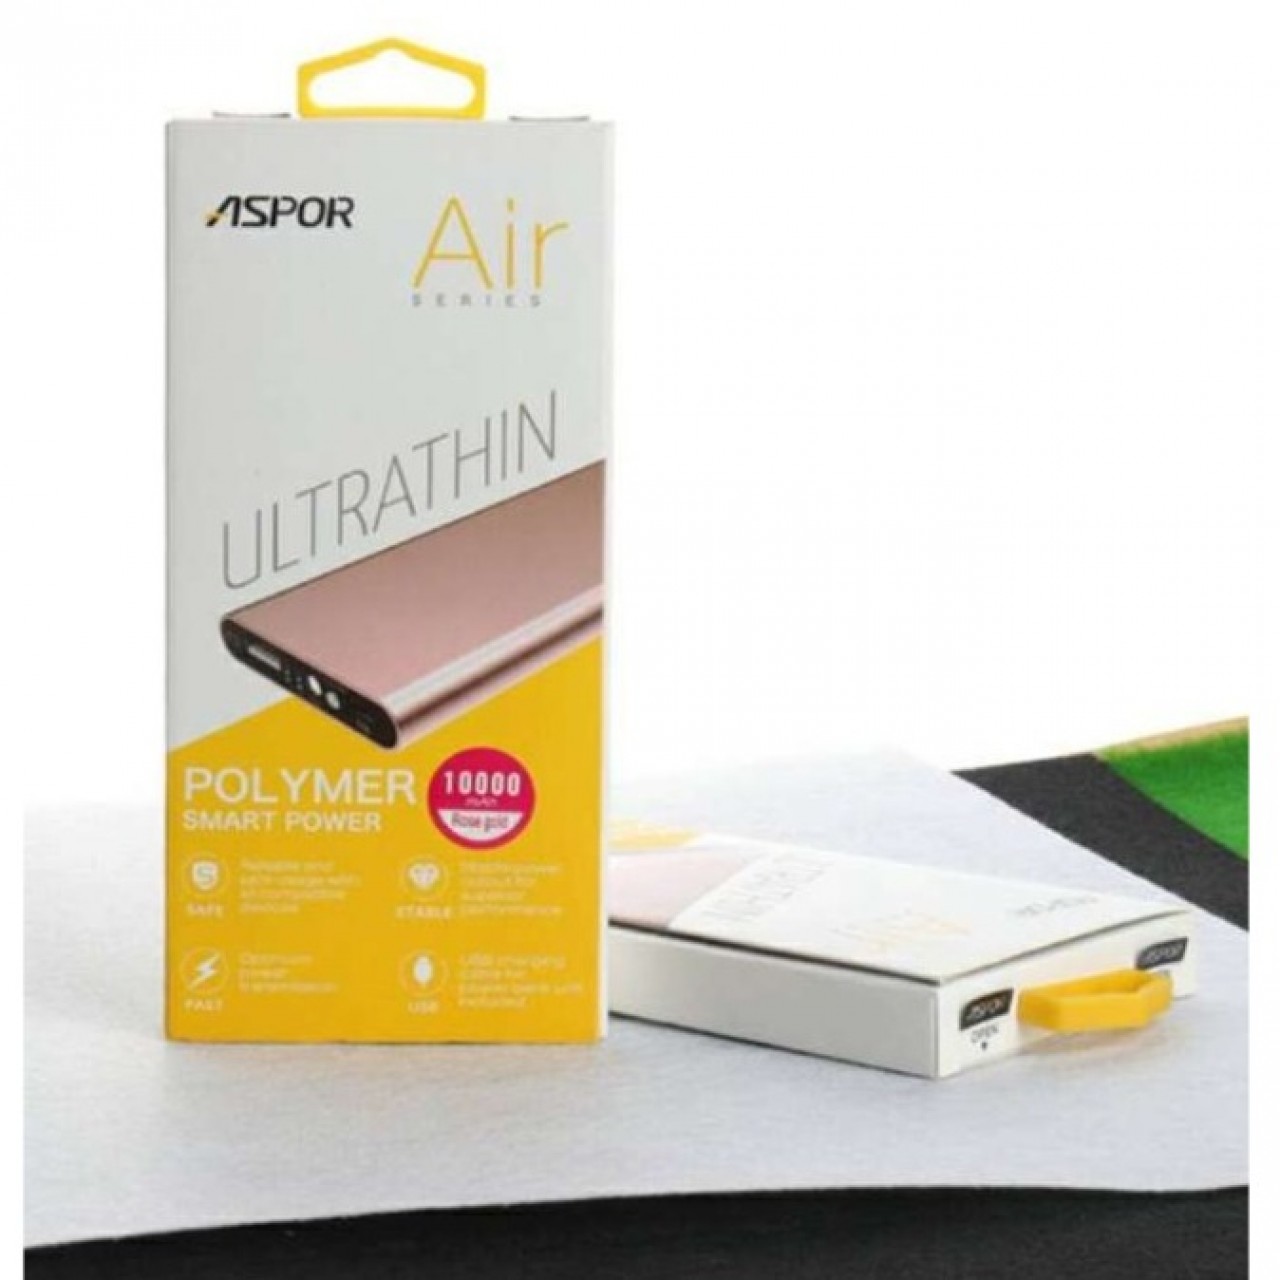 Aspor Air Series Ultrathin 10000mAh Power Bank A383 - Silver